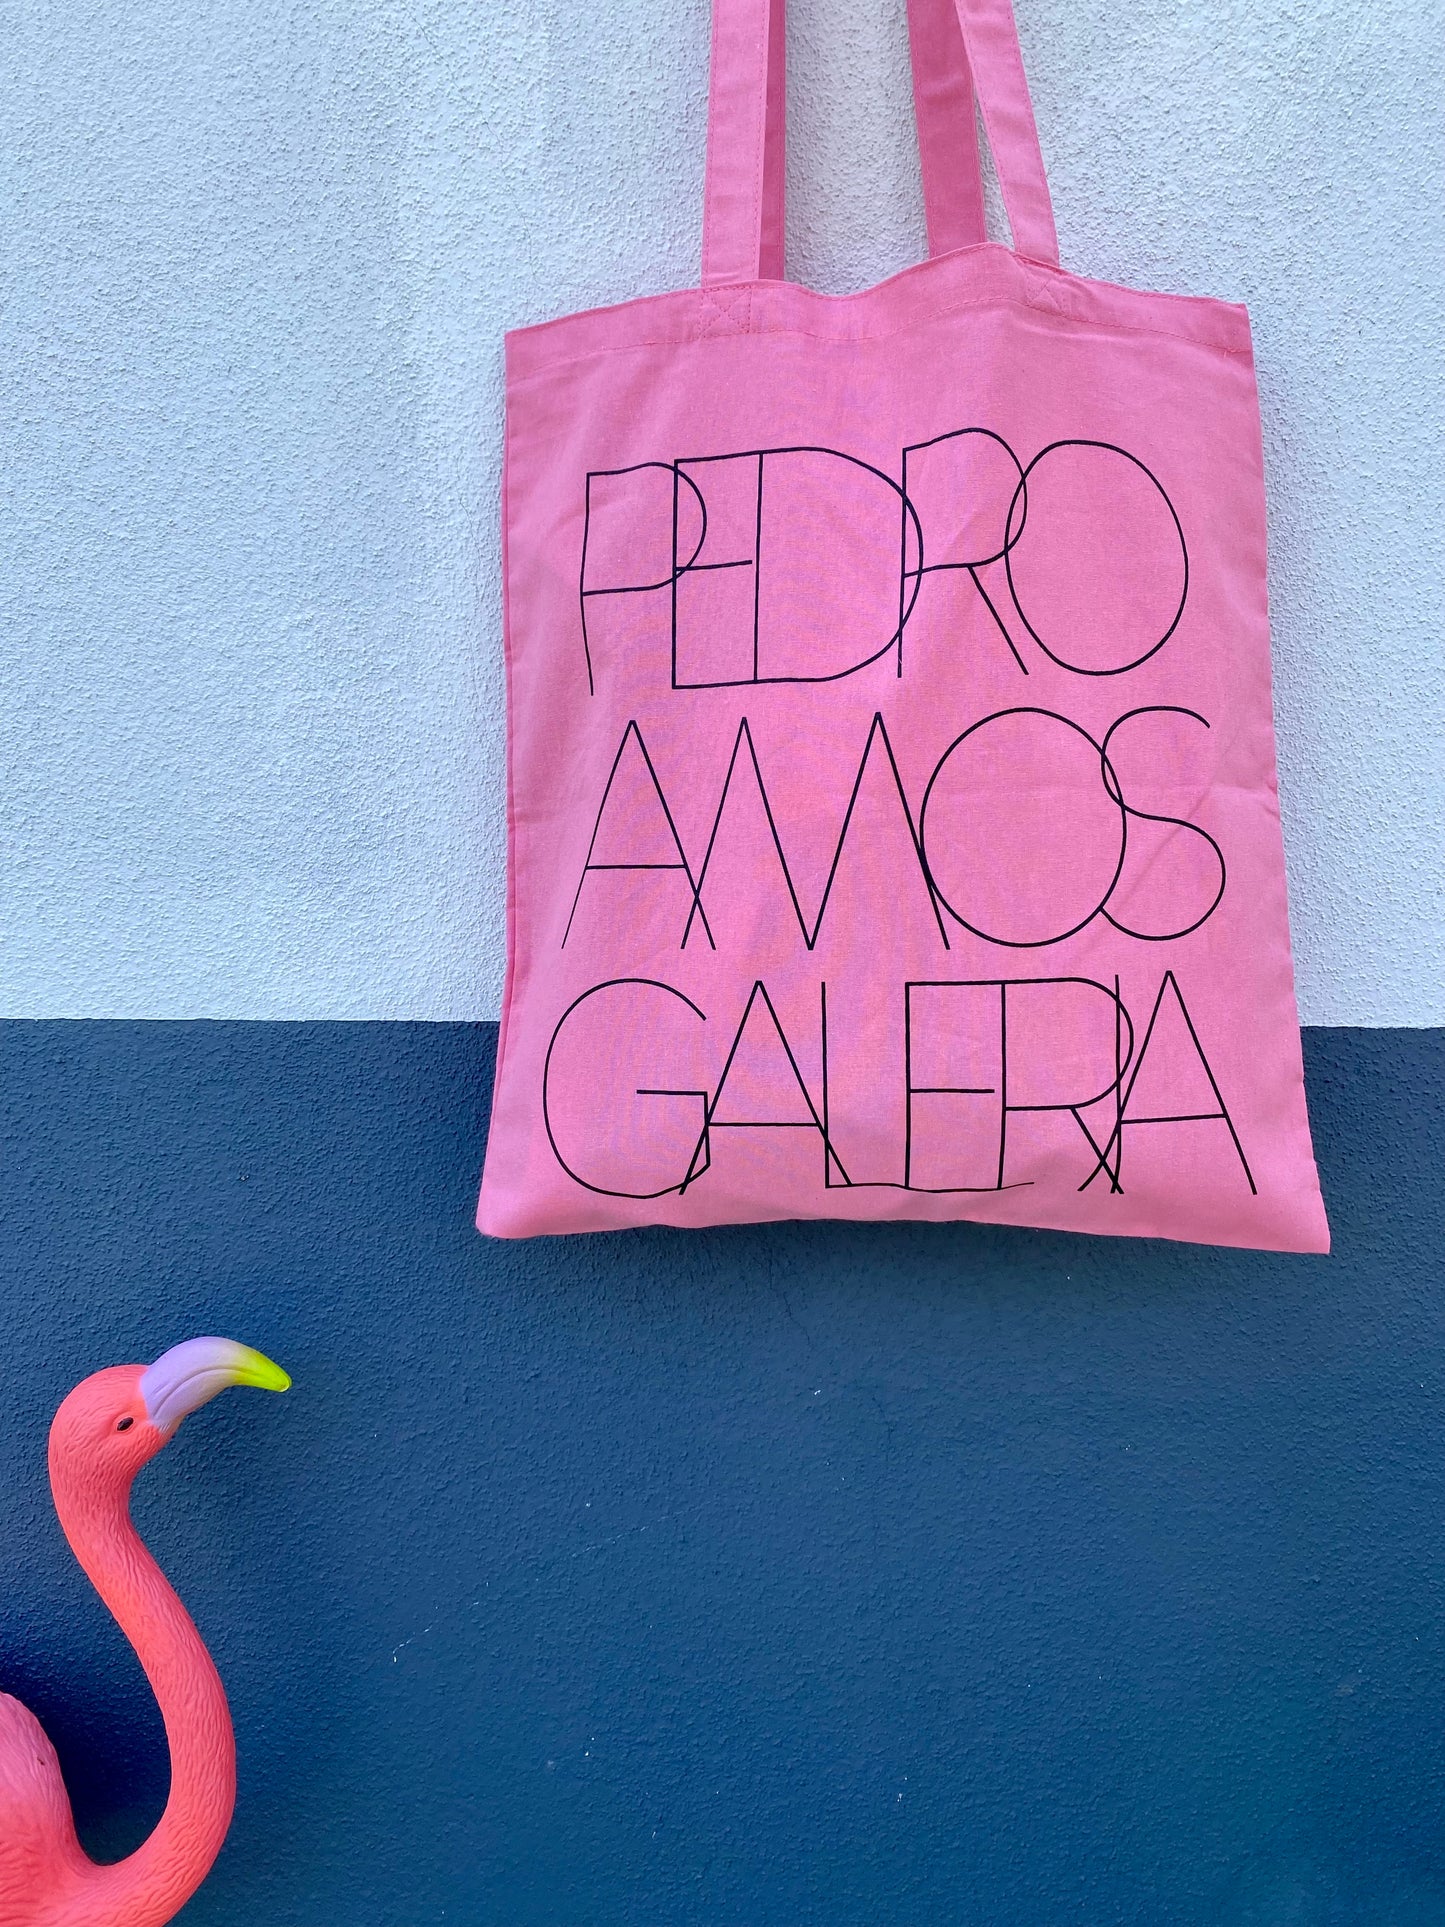 Tote Bag - Pink